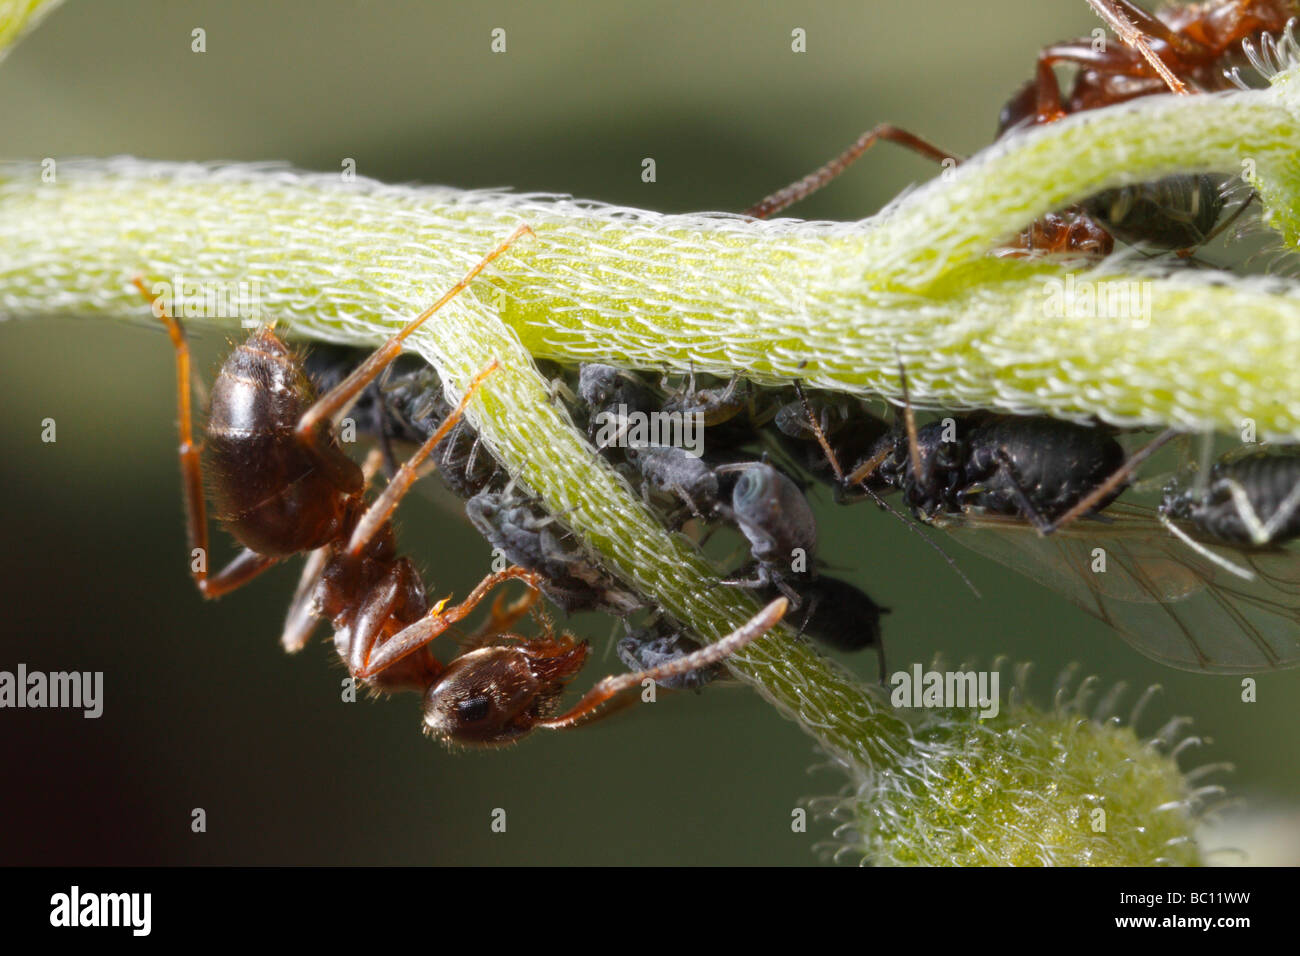 Lasius niger, il giardino nero ant e afidi. La formica è la mungitura afidi. Il fiore è un dimenticare-me-non o Myosotis. Foto Stock